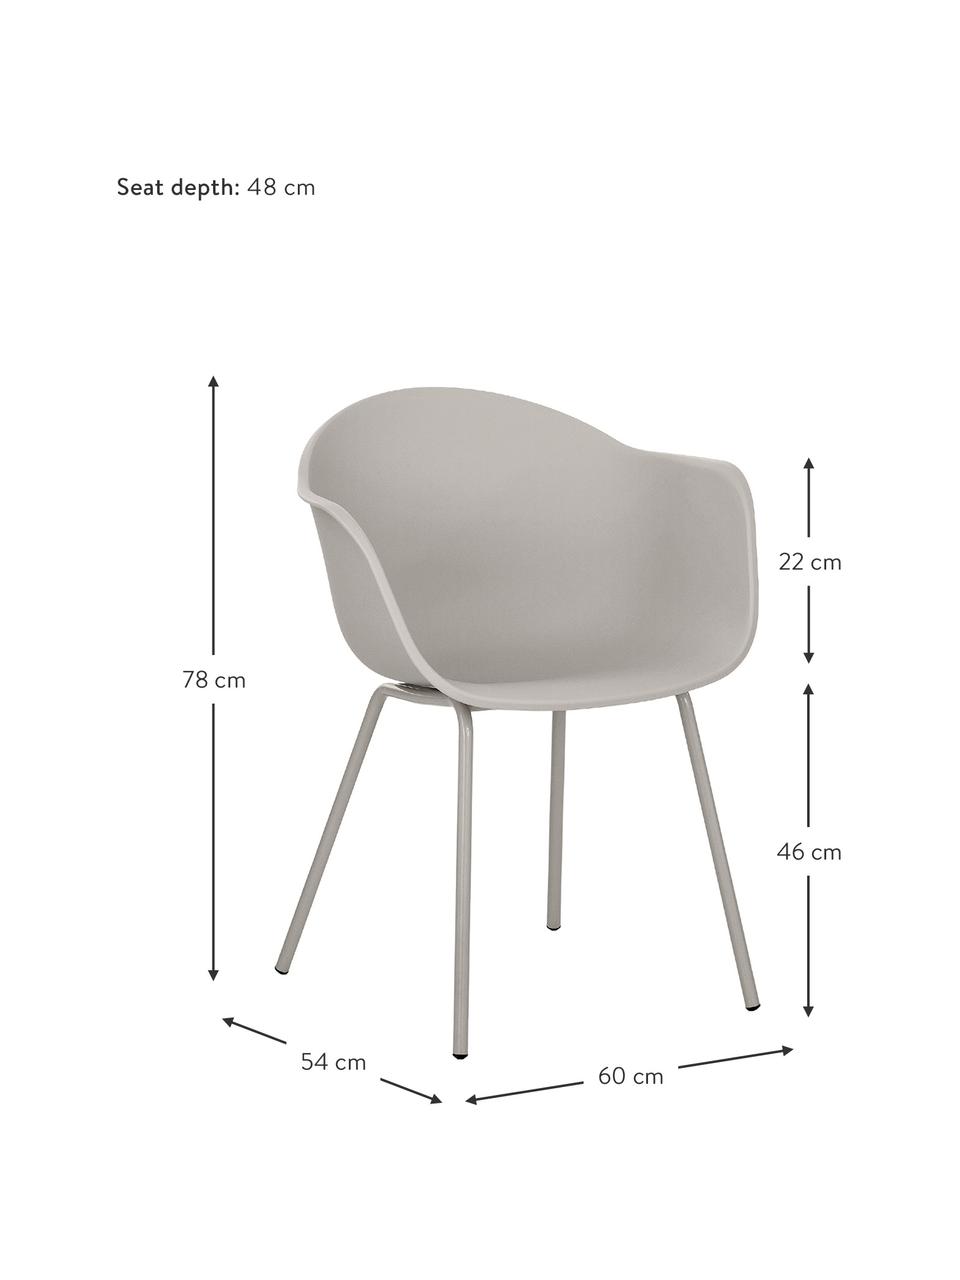 Kunststoff-Armlehnstuhl Claire mit Metallbeinen, Sitzschale: Kunststoff, Beine: Metall, pulverbeschichtet, Greige, B 60 x T 54 cm